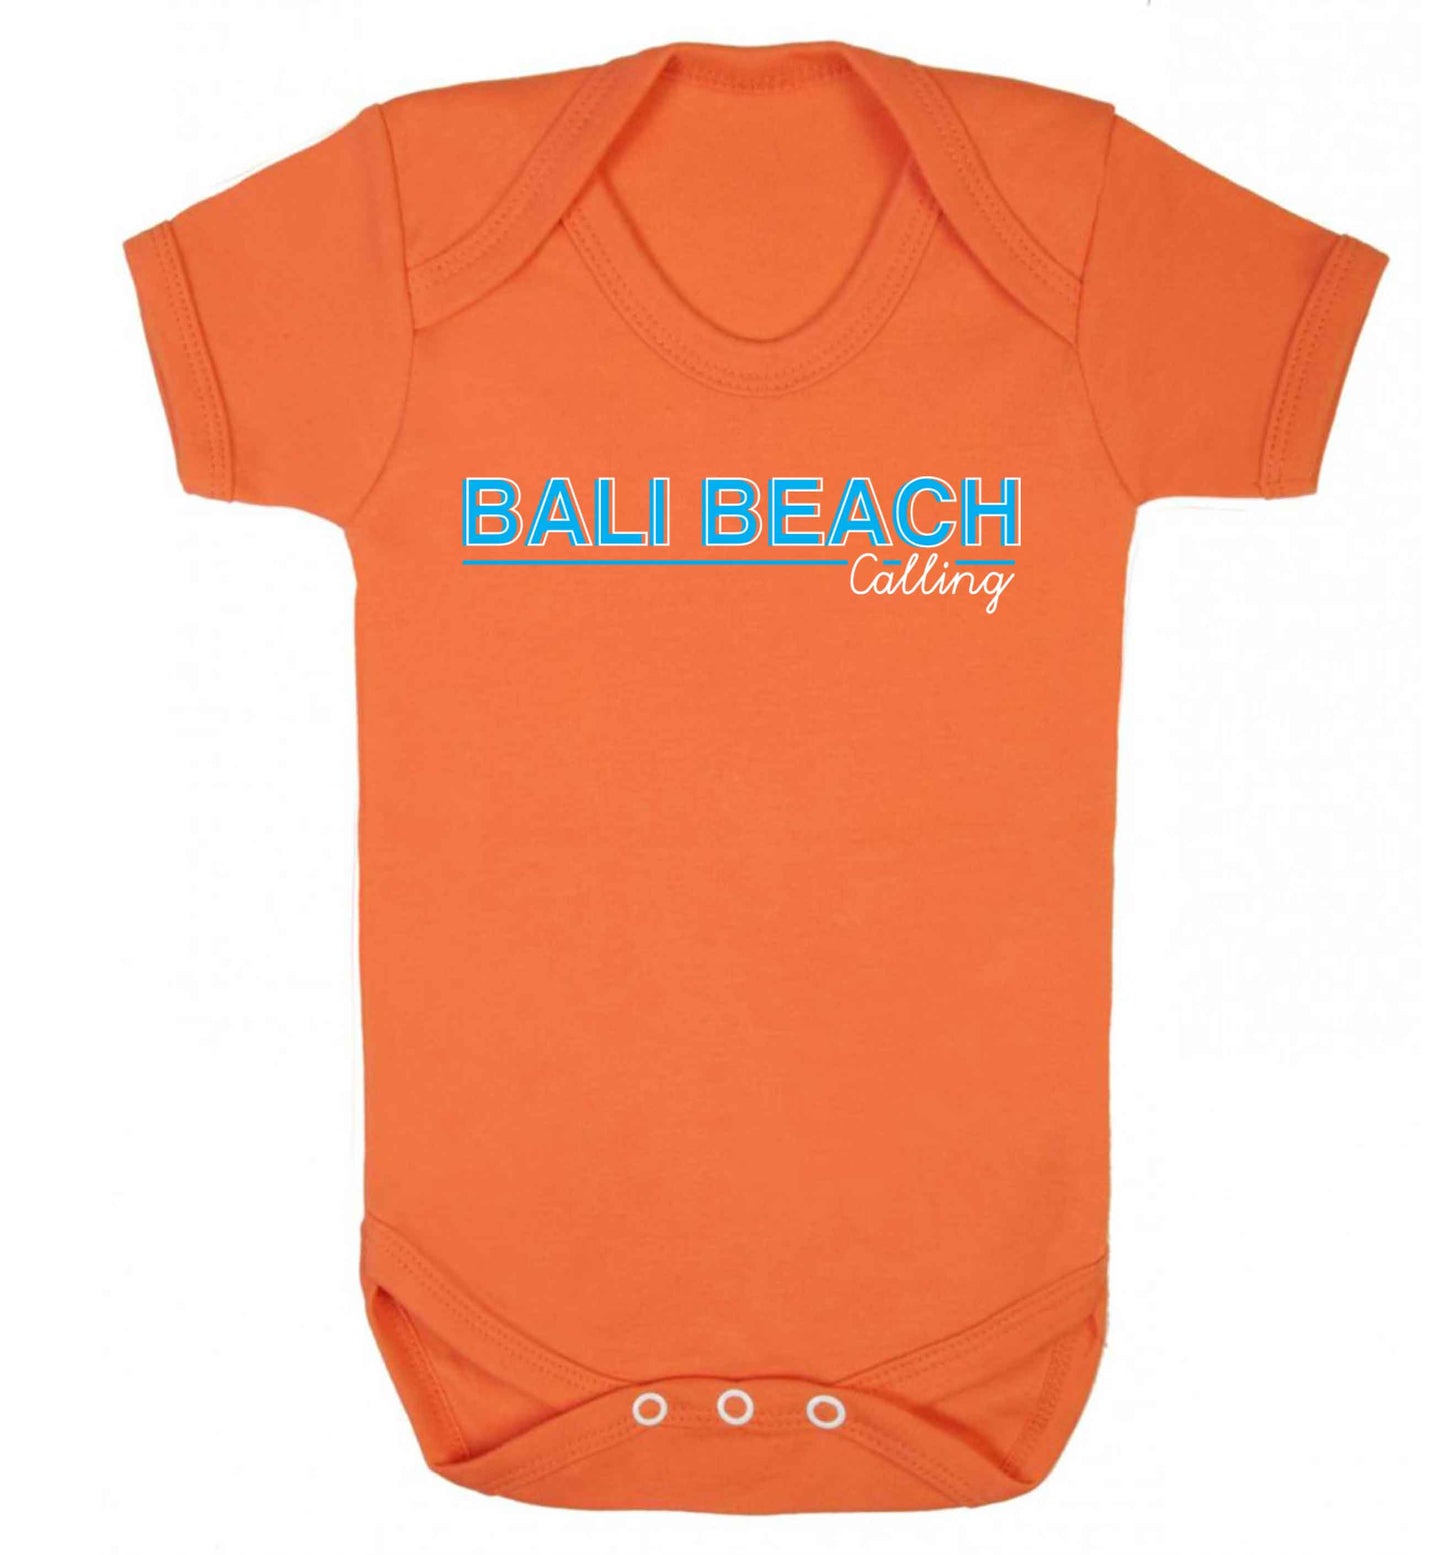 Bali beach calling Baby Vest orange 18-24 months